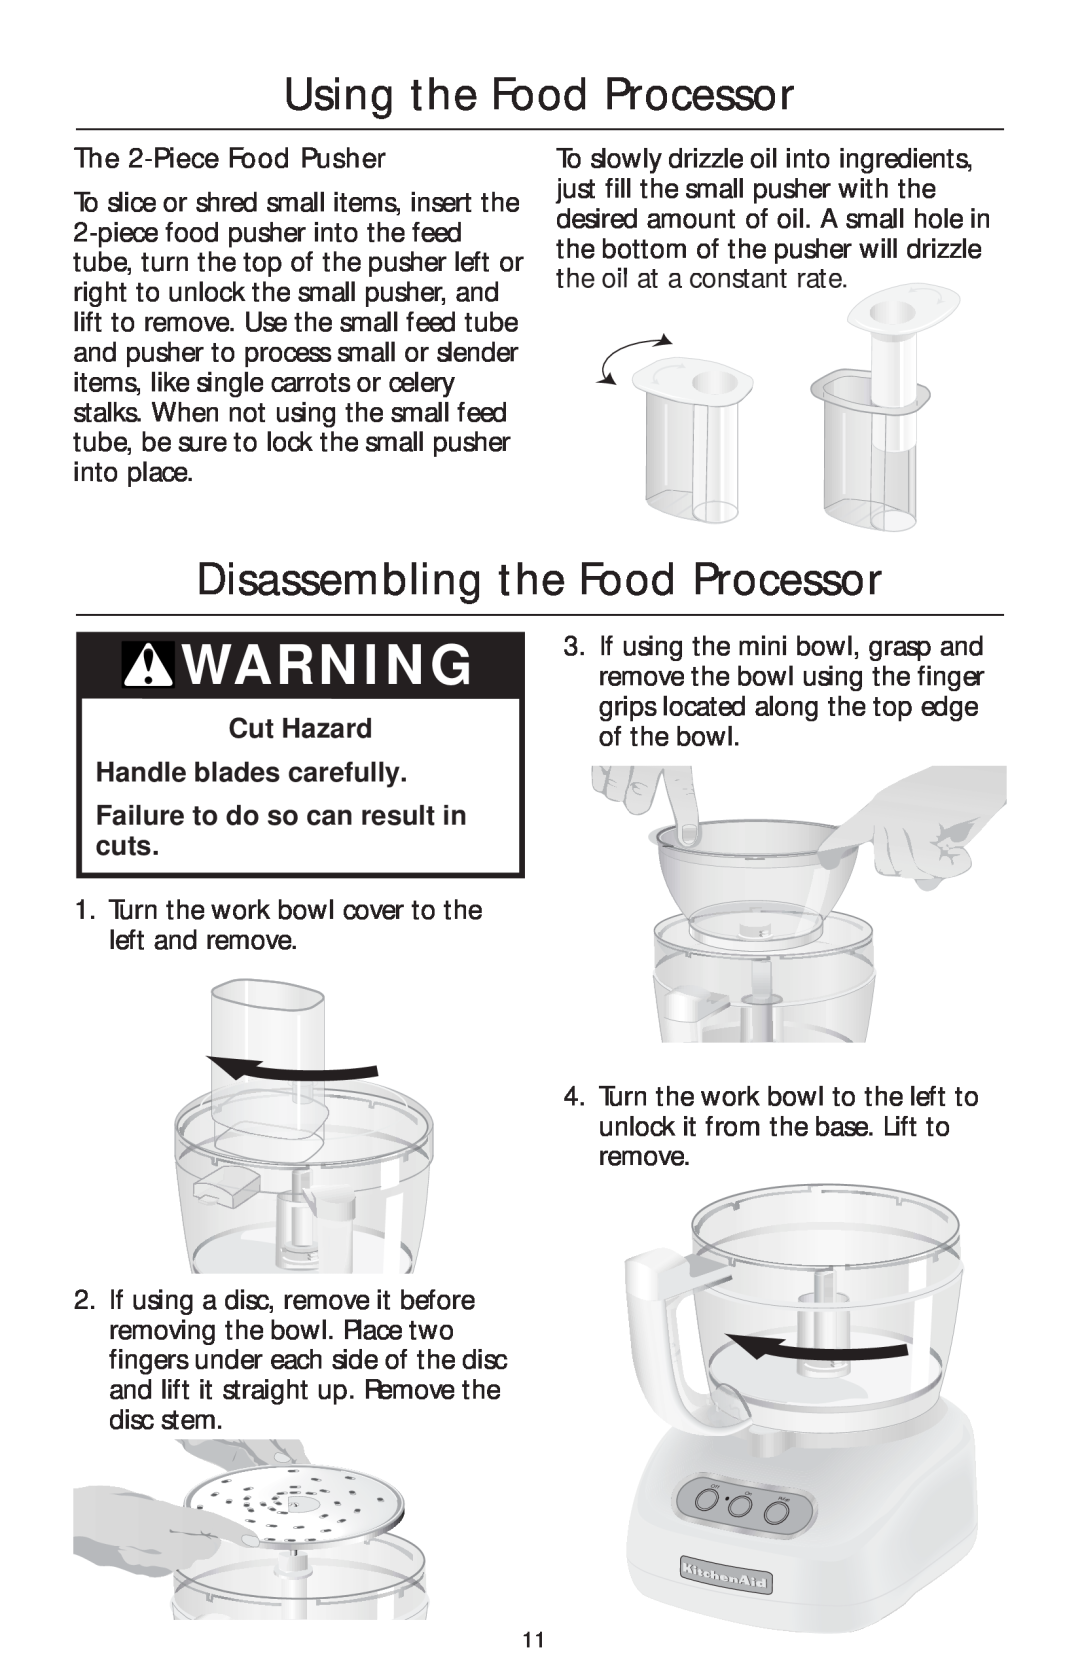 KitchenAid 4KFP750 manual Disassembling the Food Processor, The 2-Piece Food Pusher, Using the Food Processor 